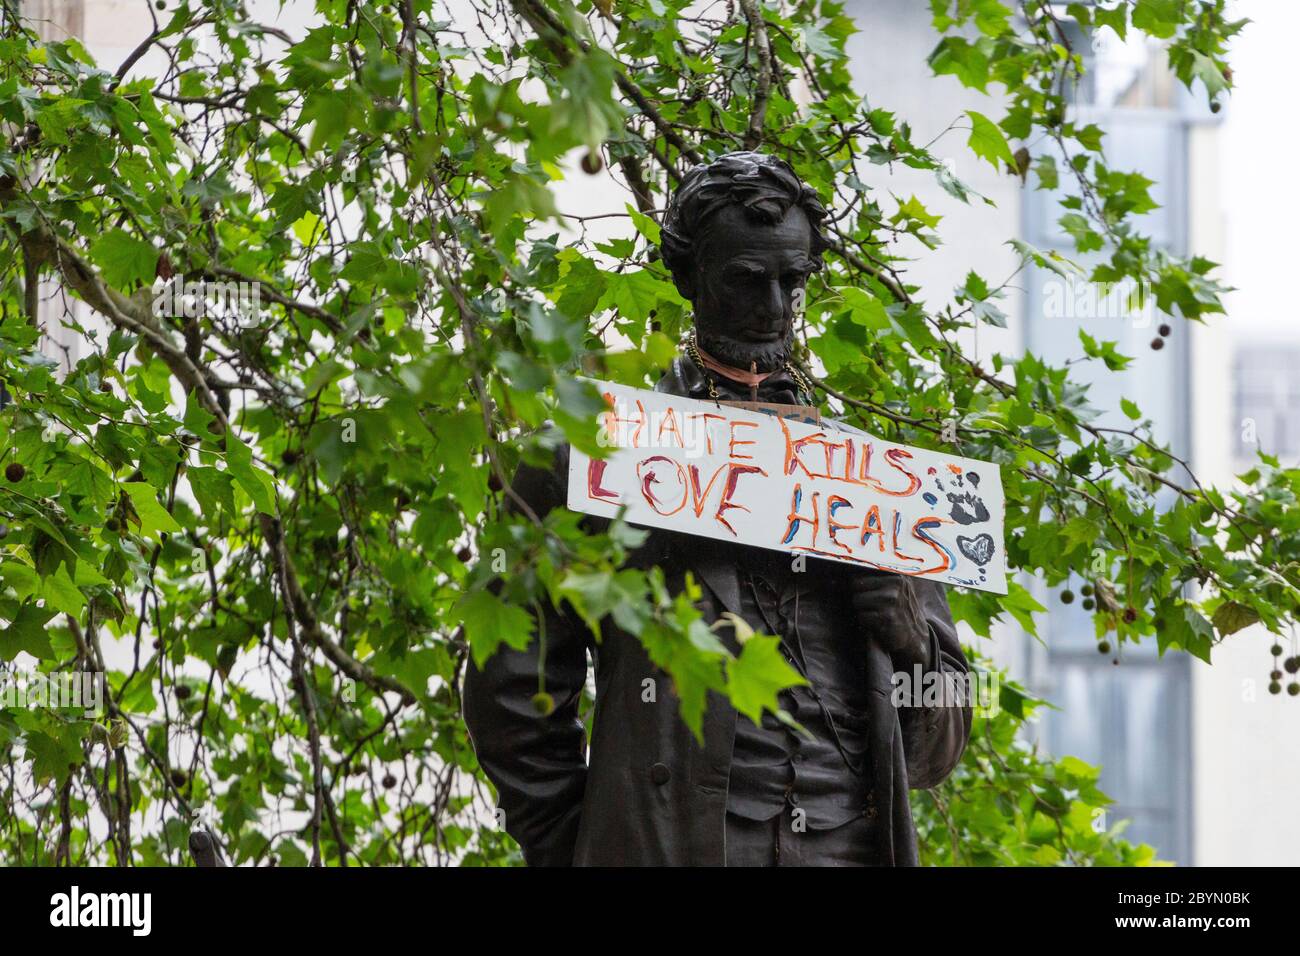 Gros plan de la statue d'Abraham Lincoln sur la place du Parlement avec un panneau autour du cou, Black Lives Matters Protest, Londres, 7 juin 2020 Banque D'Images